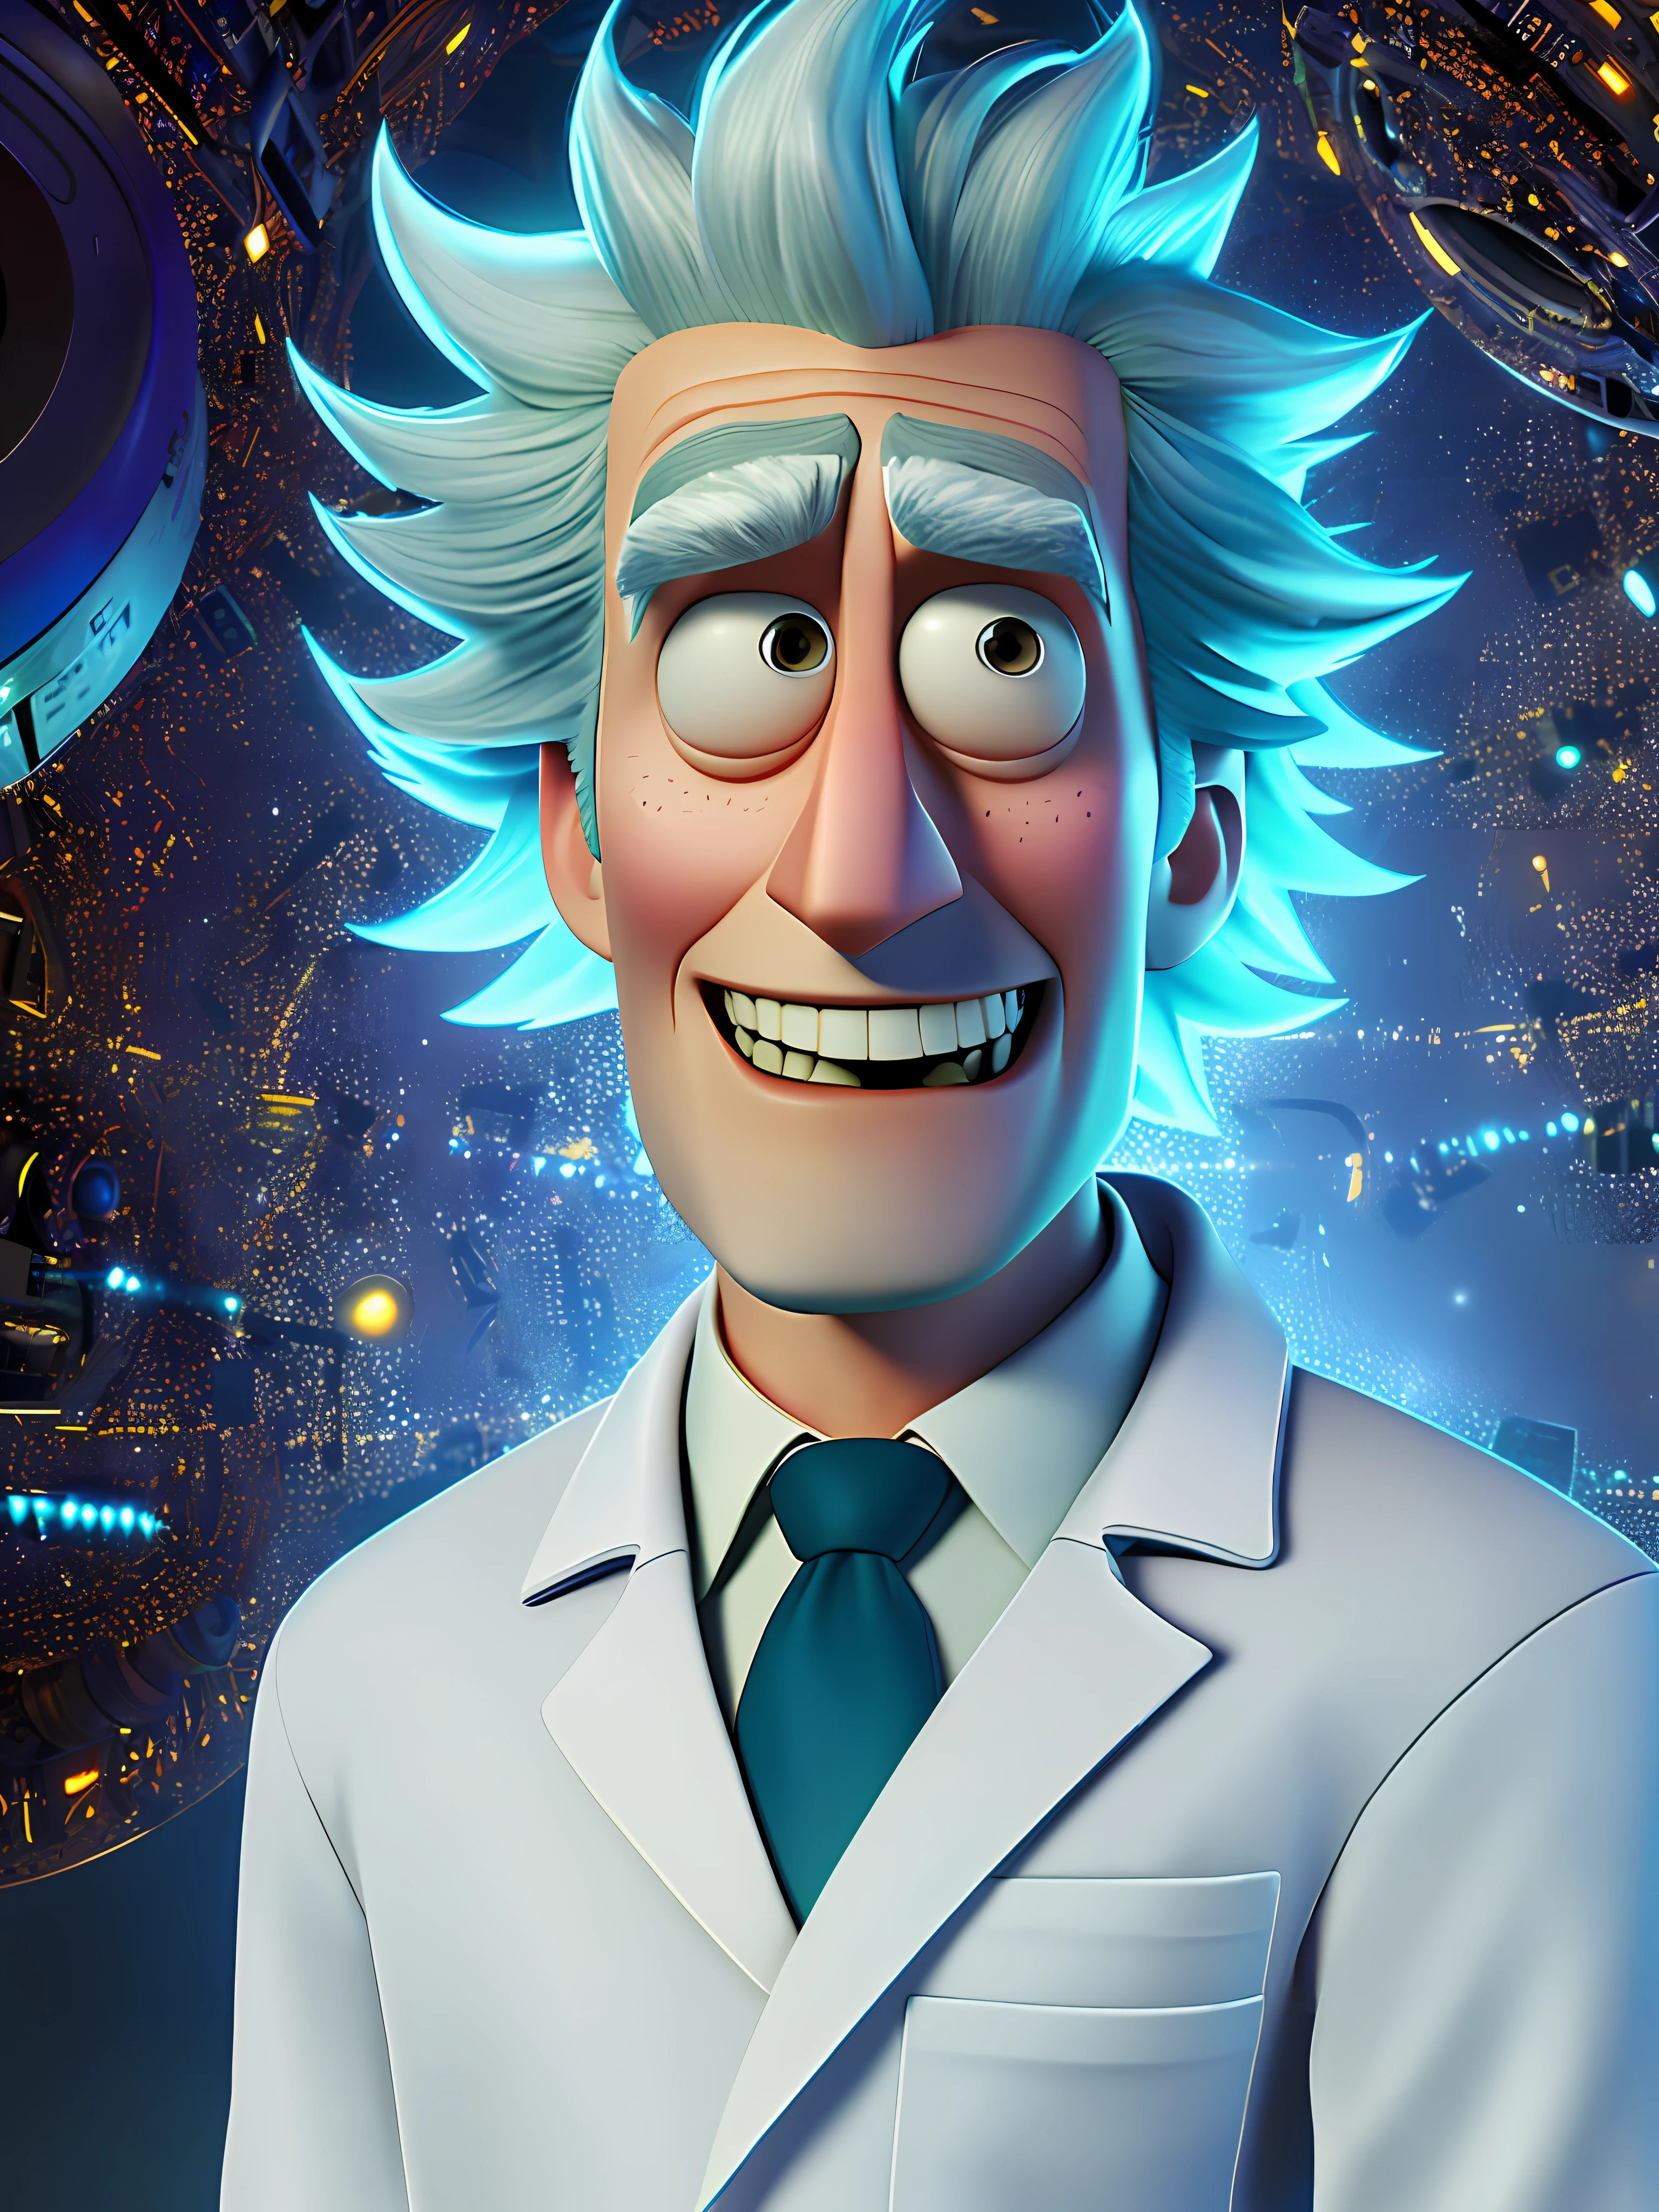 Pixarstyle портрет по пояс персонажа Рика Санчеса из «Рика и Морти» в белом лабораторном халате, улыбка, офис, Естественная текстура кожи, 4к текстуры, HDR, сложный, очень подробный, острый фокус, кинематографический визуальный эффект, сверхдетализированный